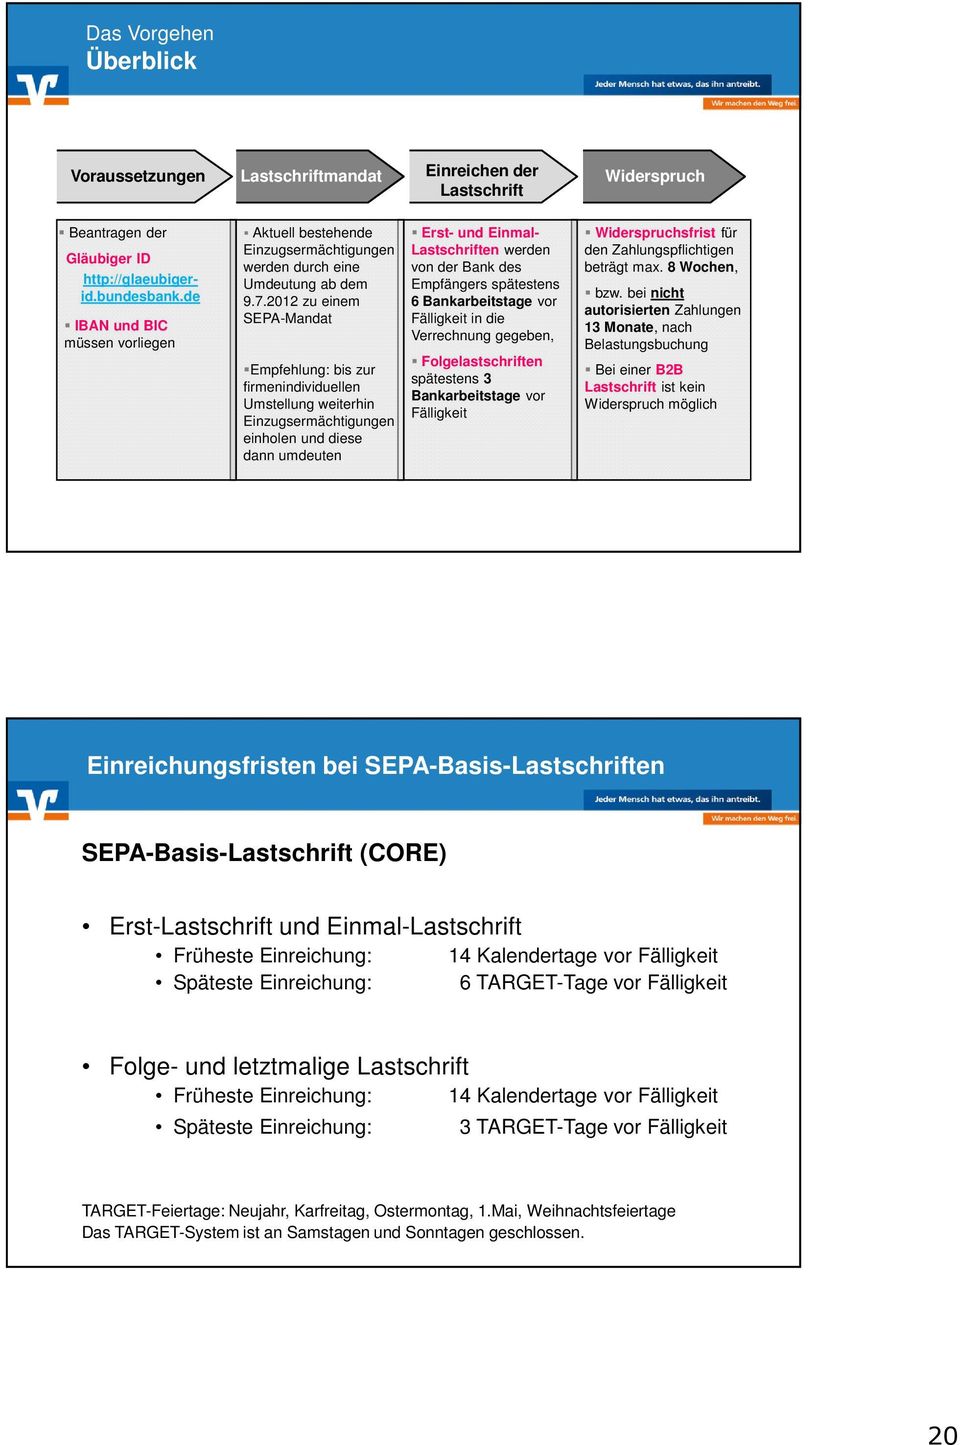 2012 zu einem SEPA-Mandat Empfehlung: bis zur firmenindividuellen Umstellung weiterhin Einzugsermächtigungen einholen und diese dann umdeuten Erst- und Einmal- Lastschriften werden von der Bank des